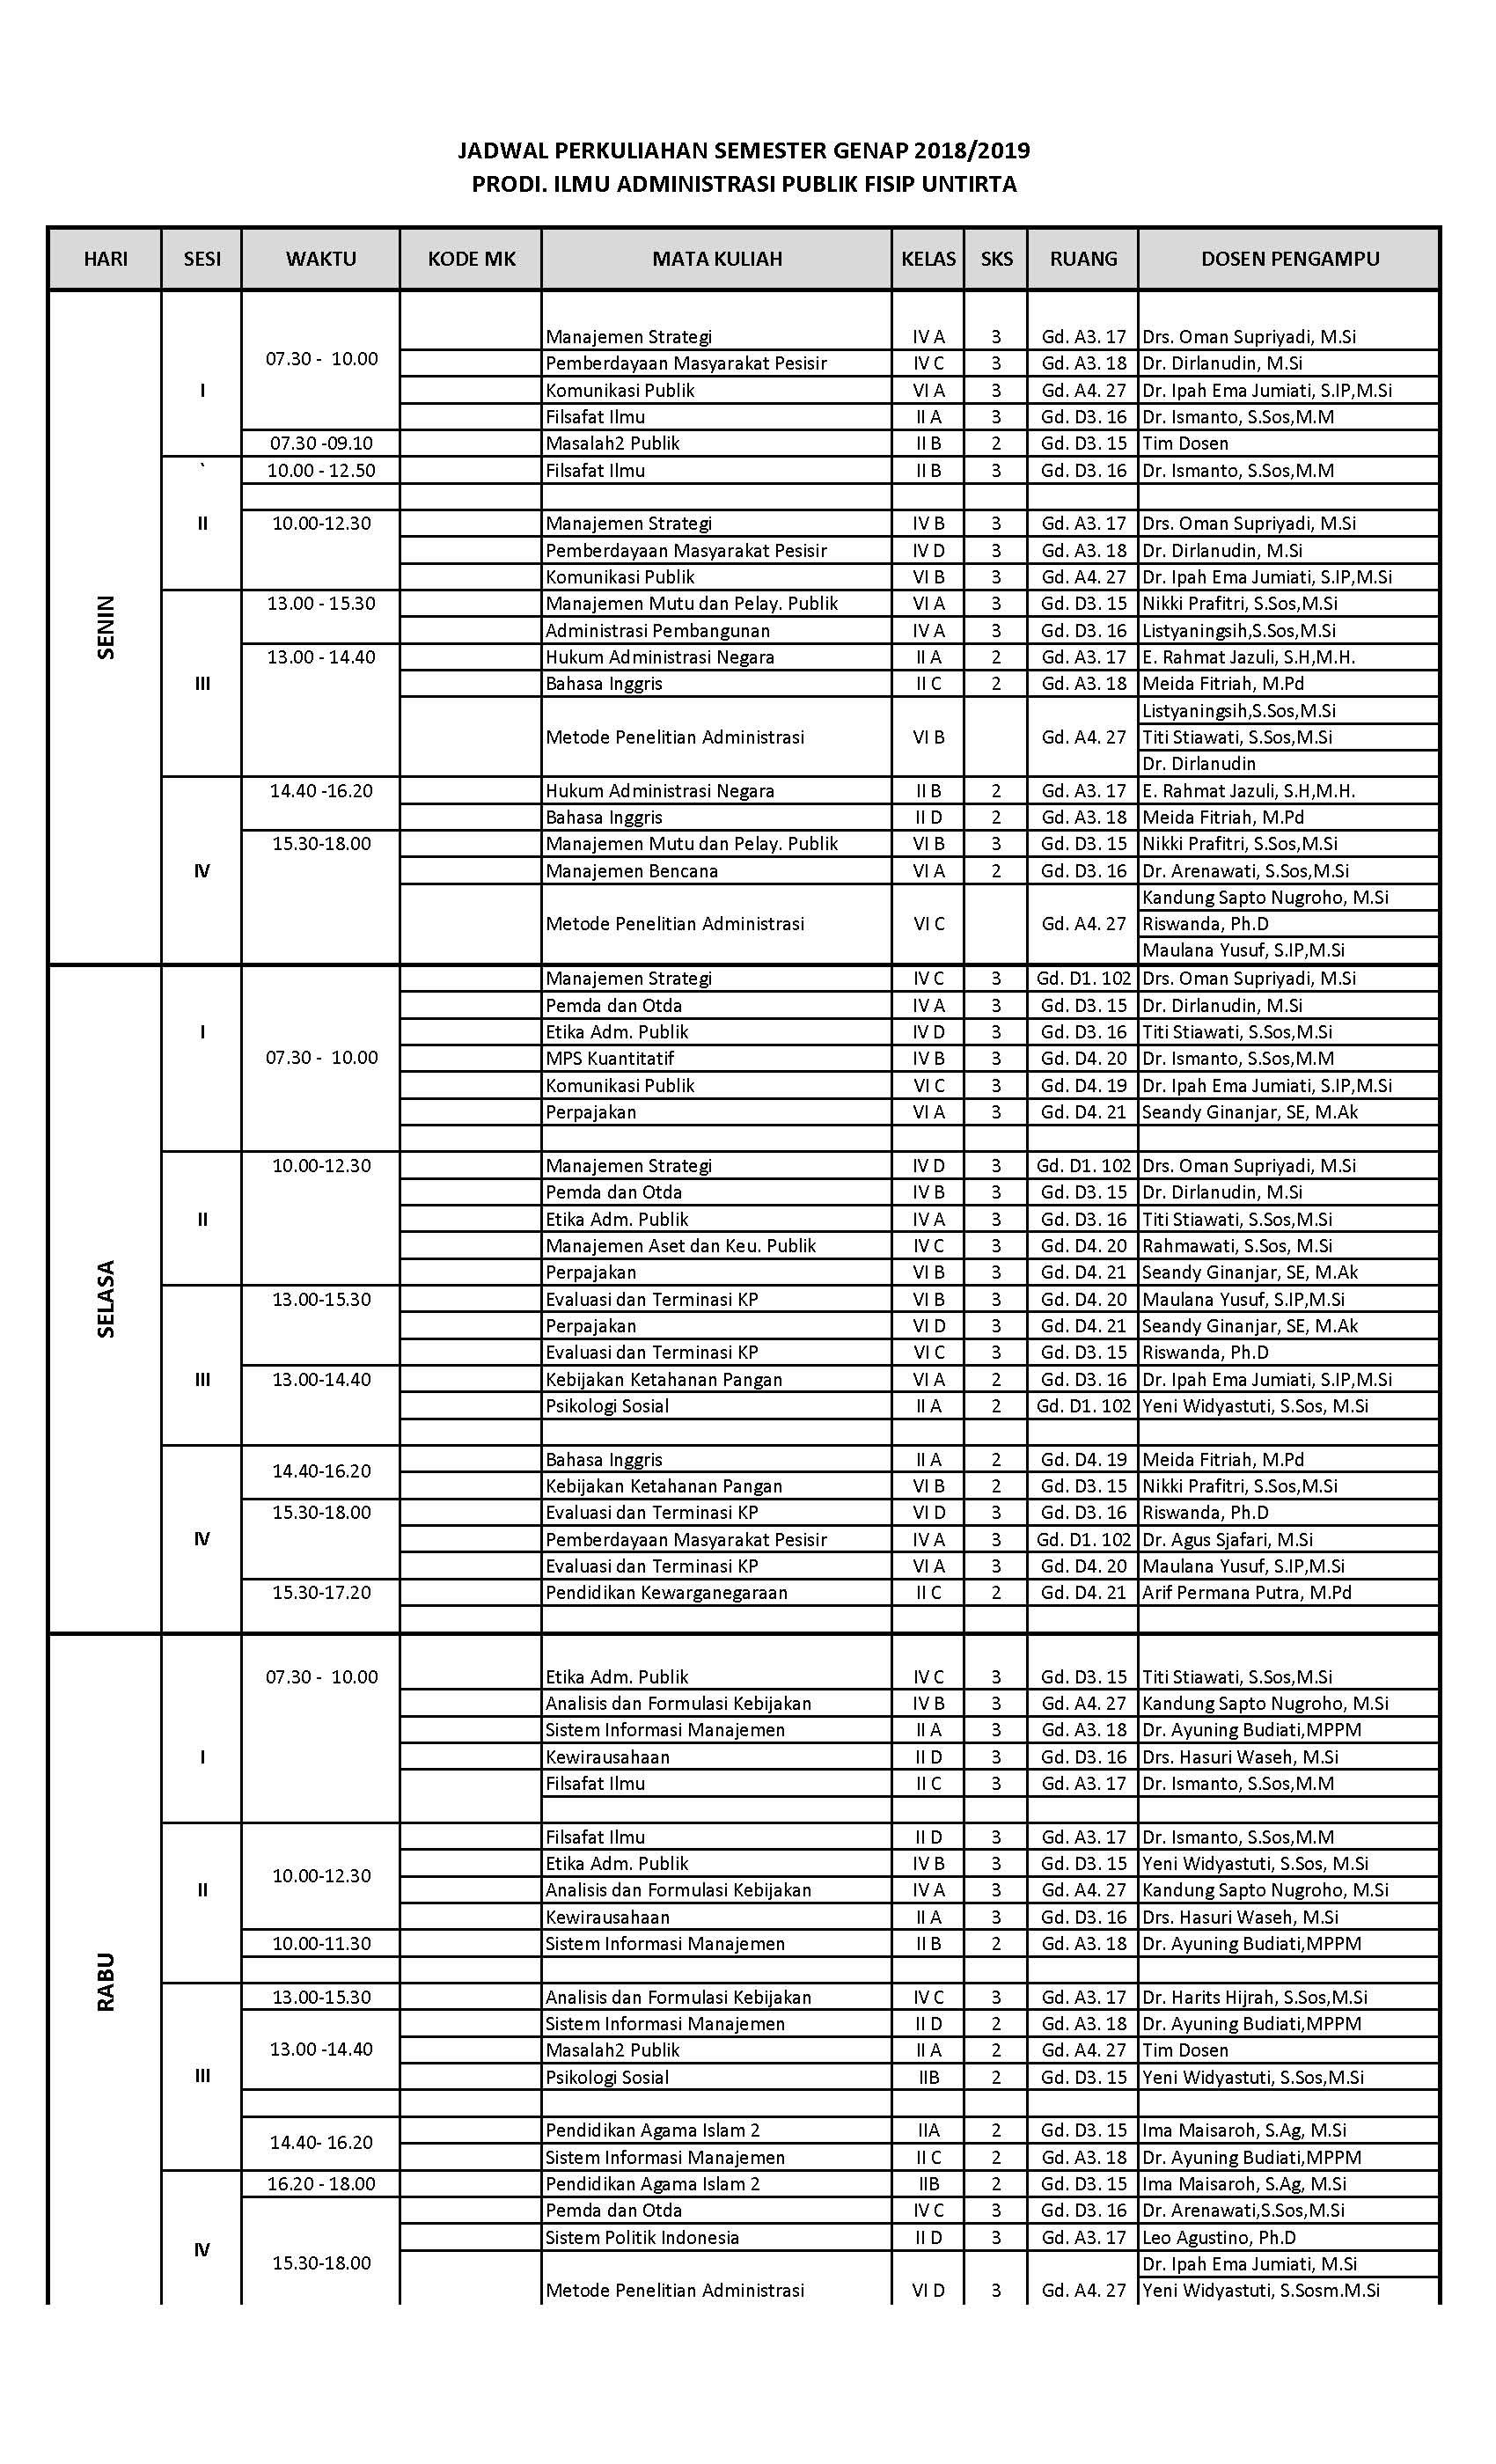 Jadwal Perkuliahan Semester Genap 2018/2019 (Update 28 Januari 2018)